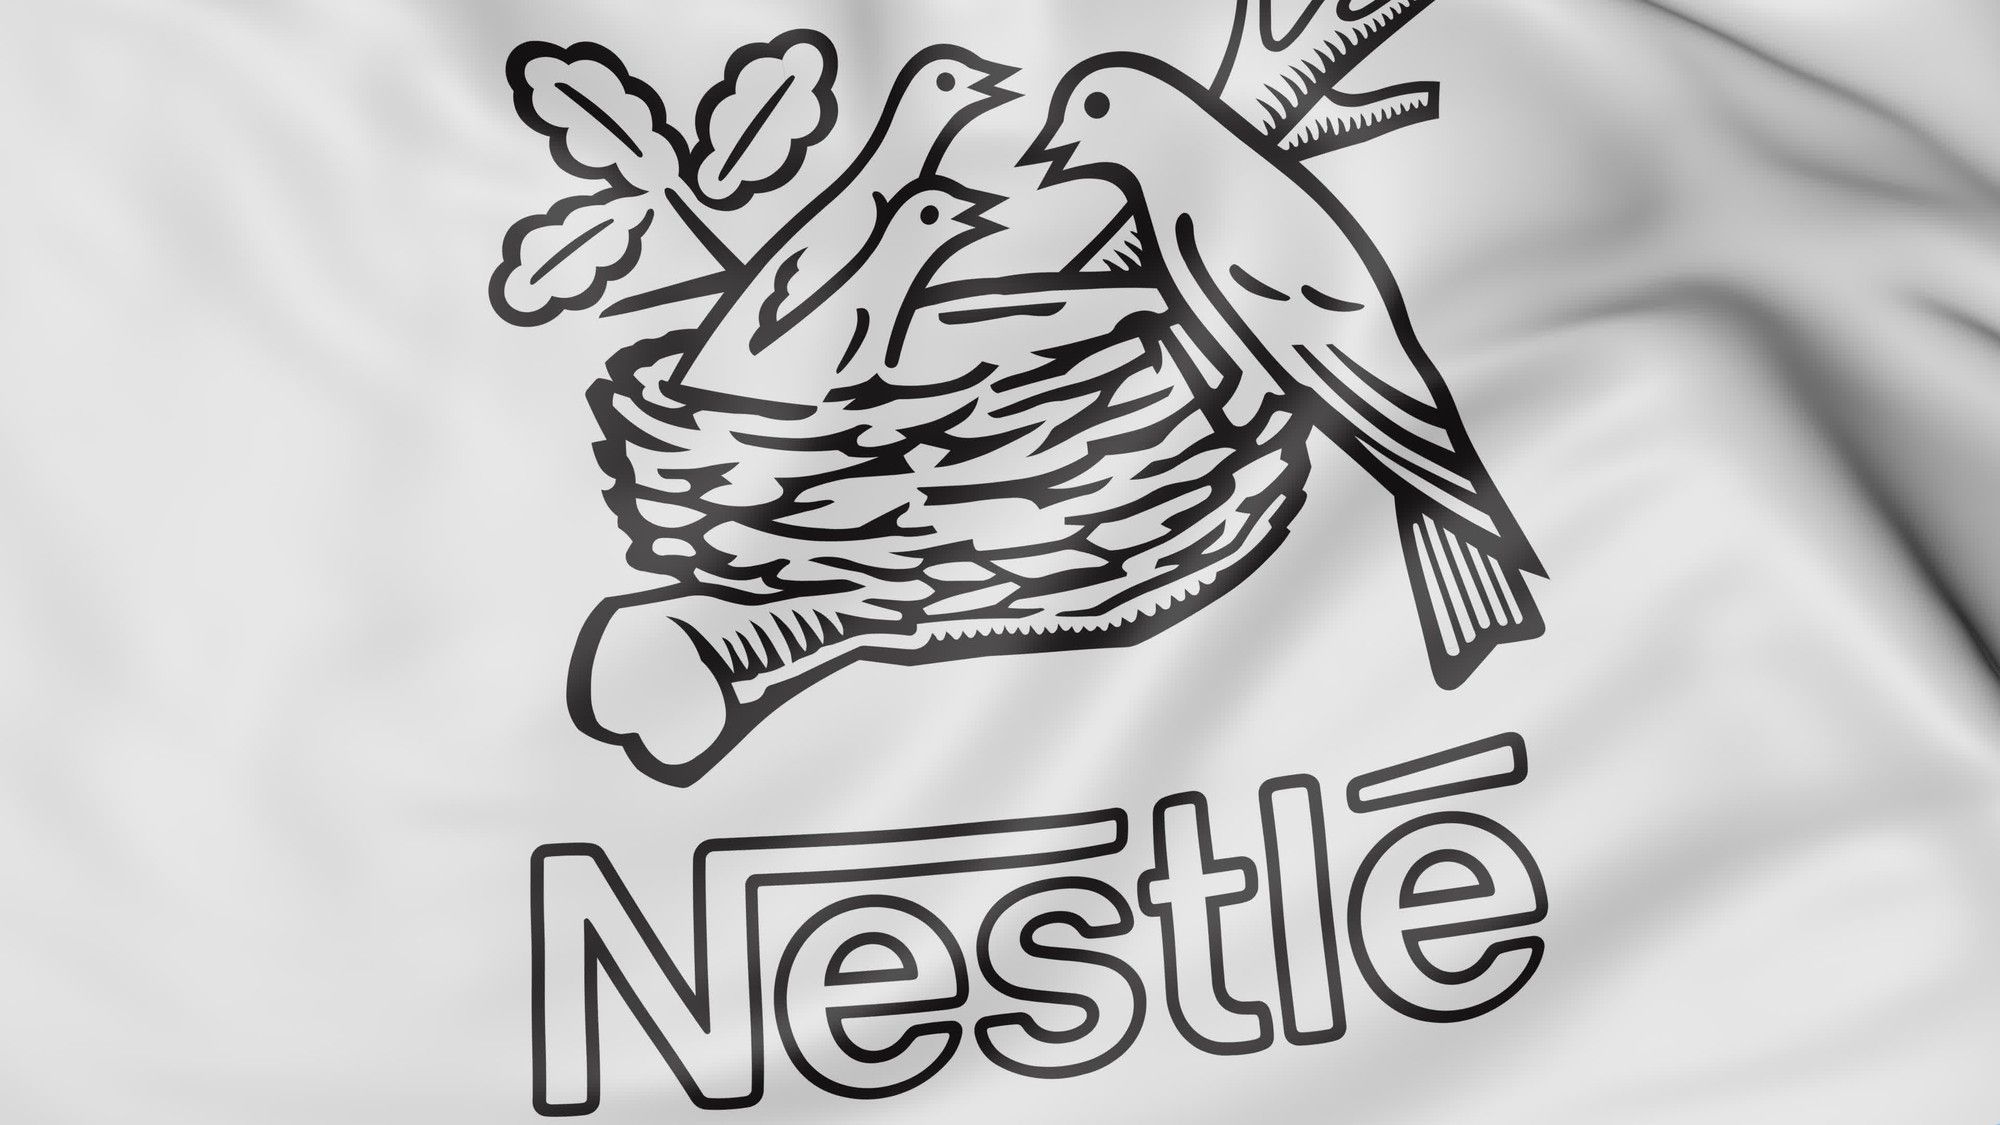 Nestlé candy has put up a website for a class action lawsuit settlement.